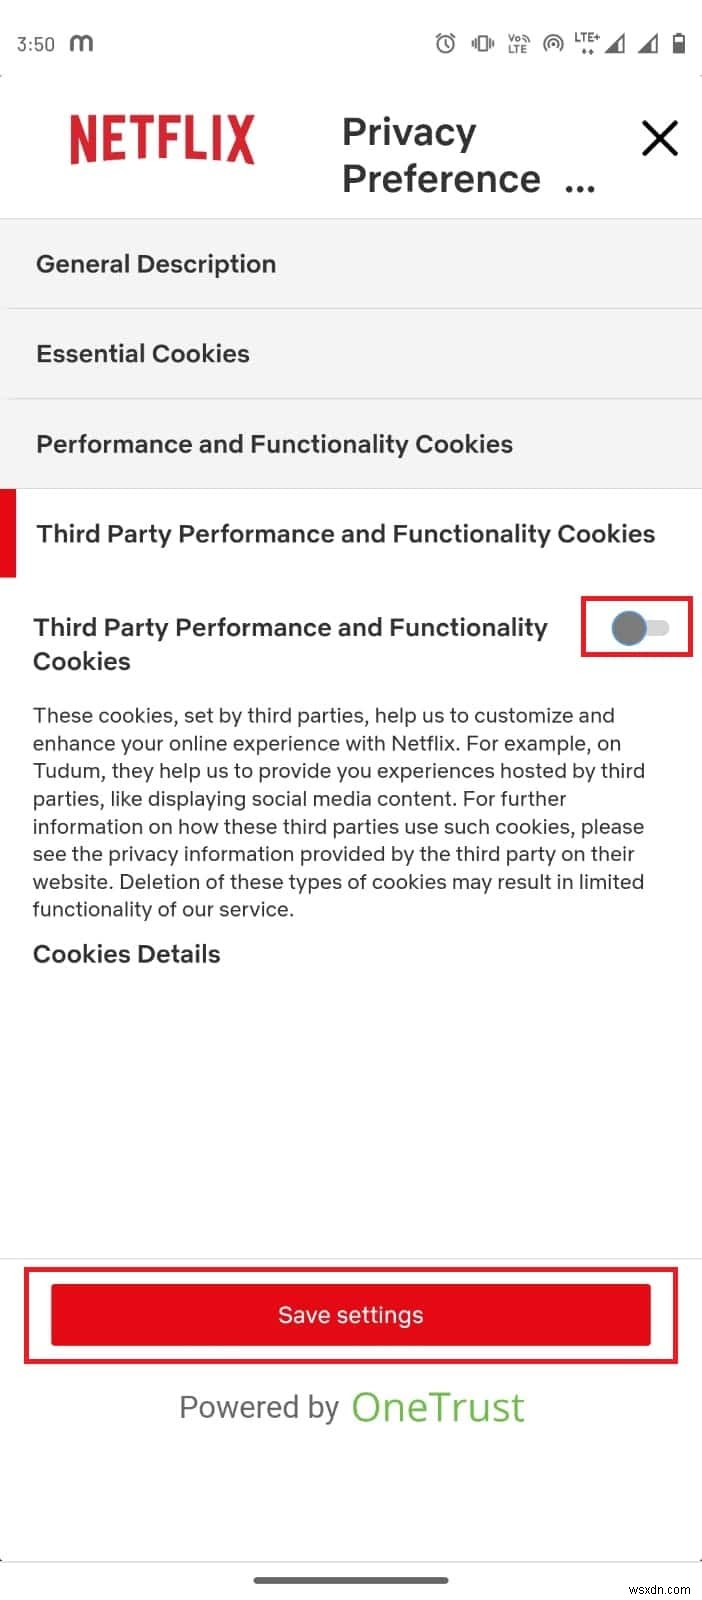 Android で Netflix Cookie を削除する方法